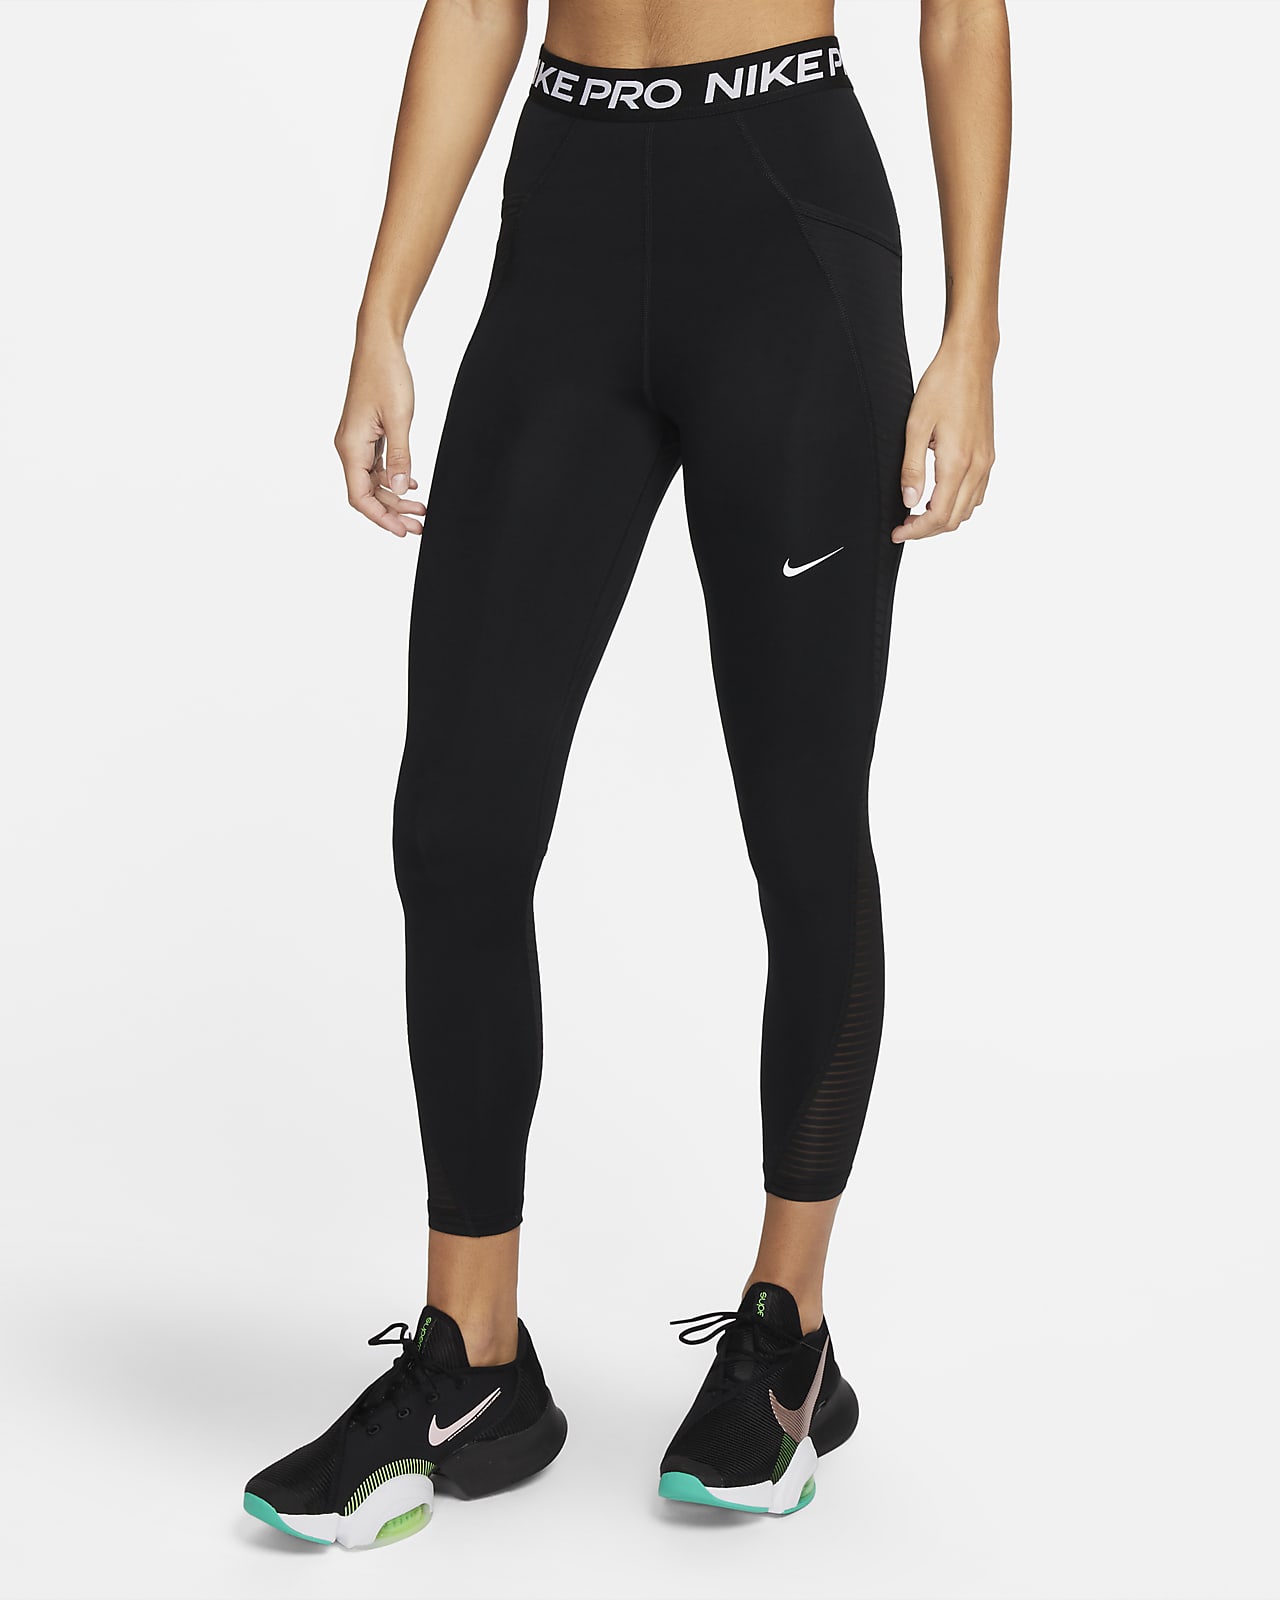 Γυναικείο ψηλόμεσο κολάν με τσέπες Nike Pro